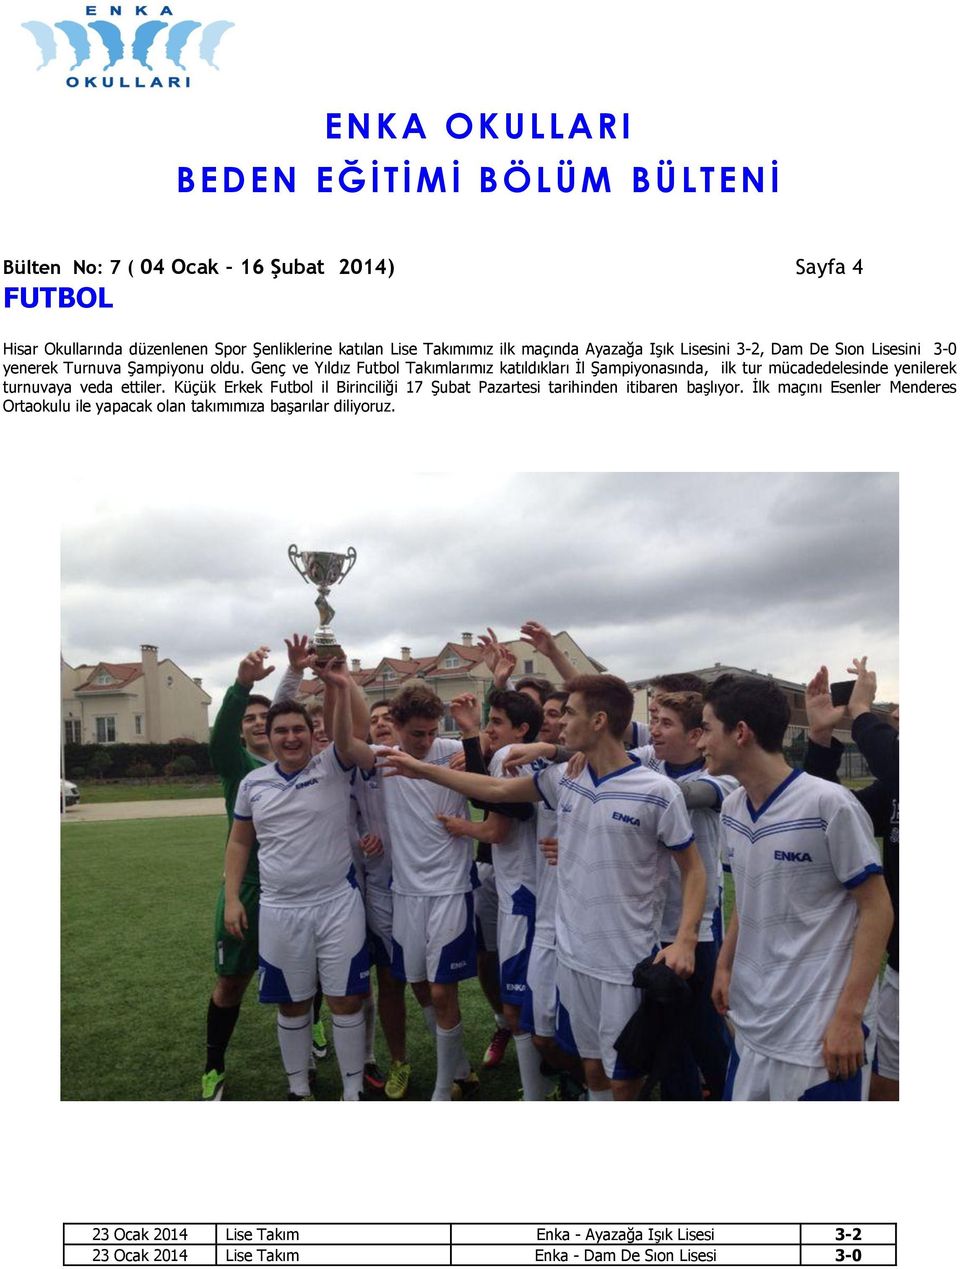 Genç ve Yıldız Futbol Takımlarımız katıldıkları İl Şampiyonasında, ilk tur mücadedelesinde yenilerek turnuvaya veda ettiler.